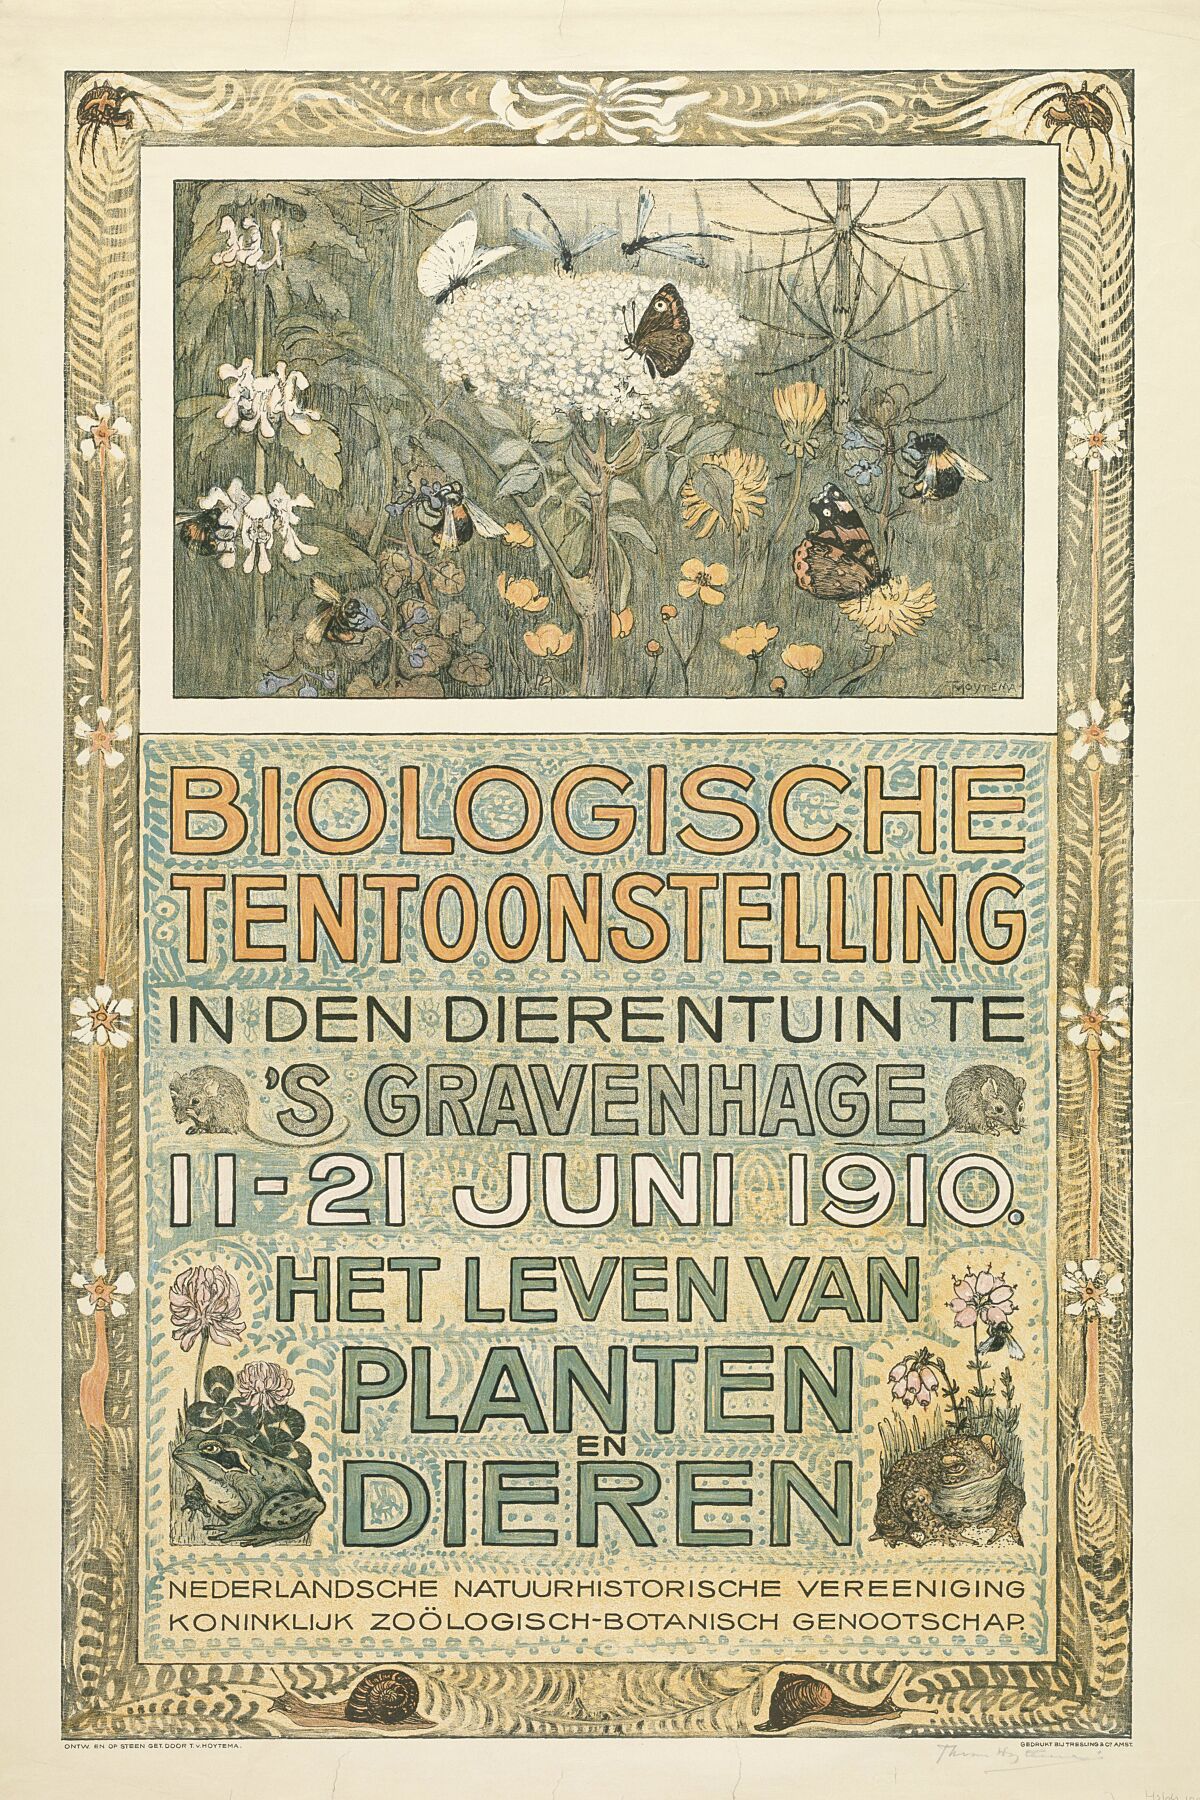 Poster of the Biologische Tentoonstelling (Biological Exhibition), Theo van Hoytema, 1910